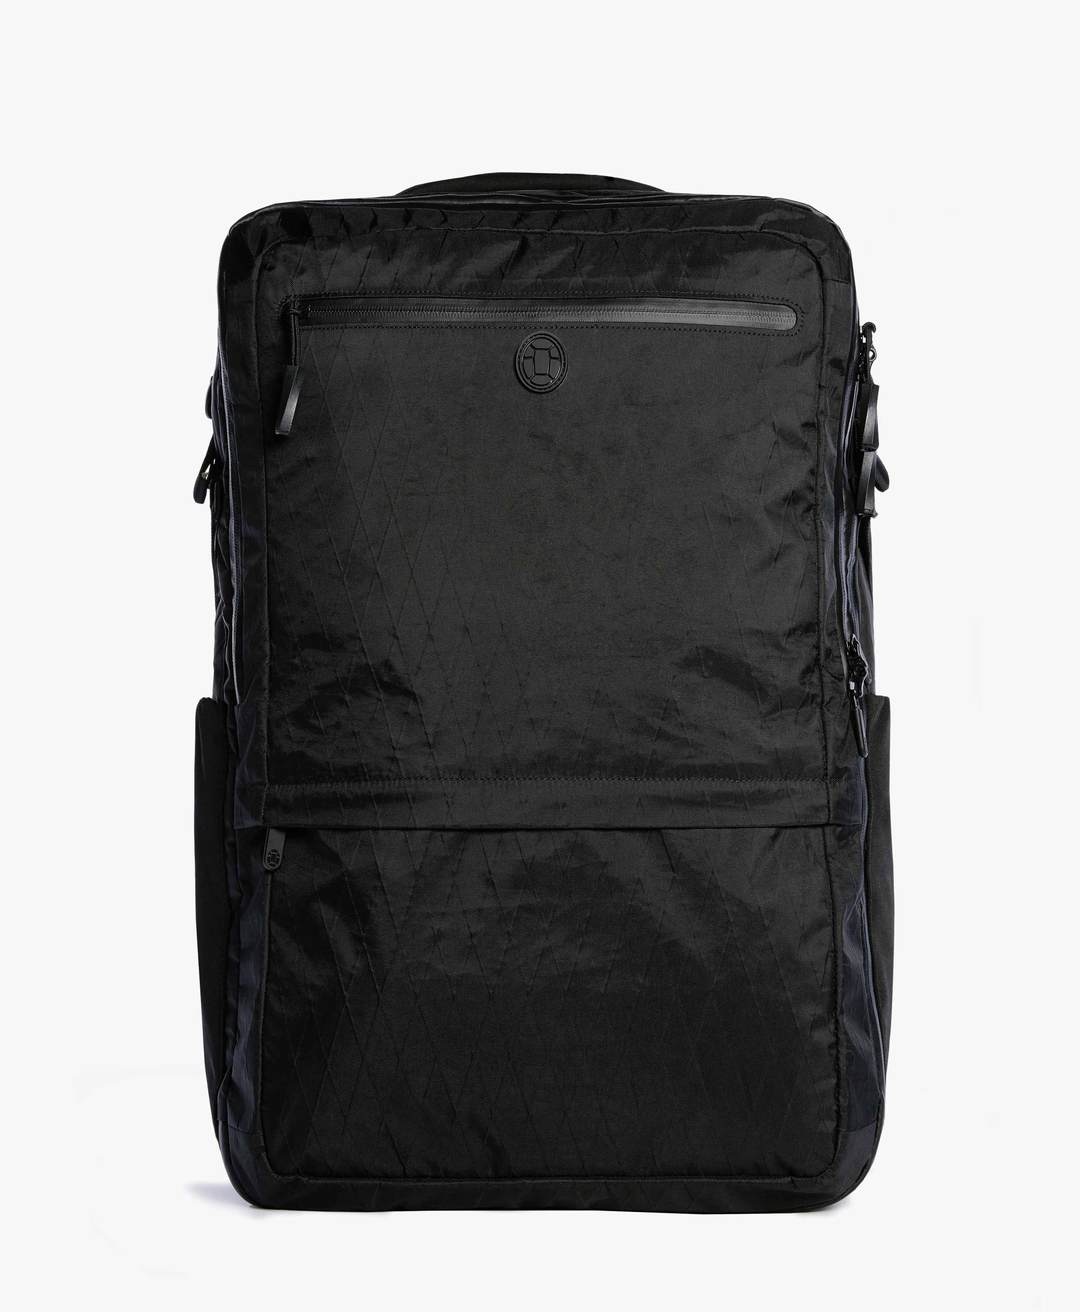 Tortuga Backpack Outbraker Backpack - 45 Liter